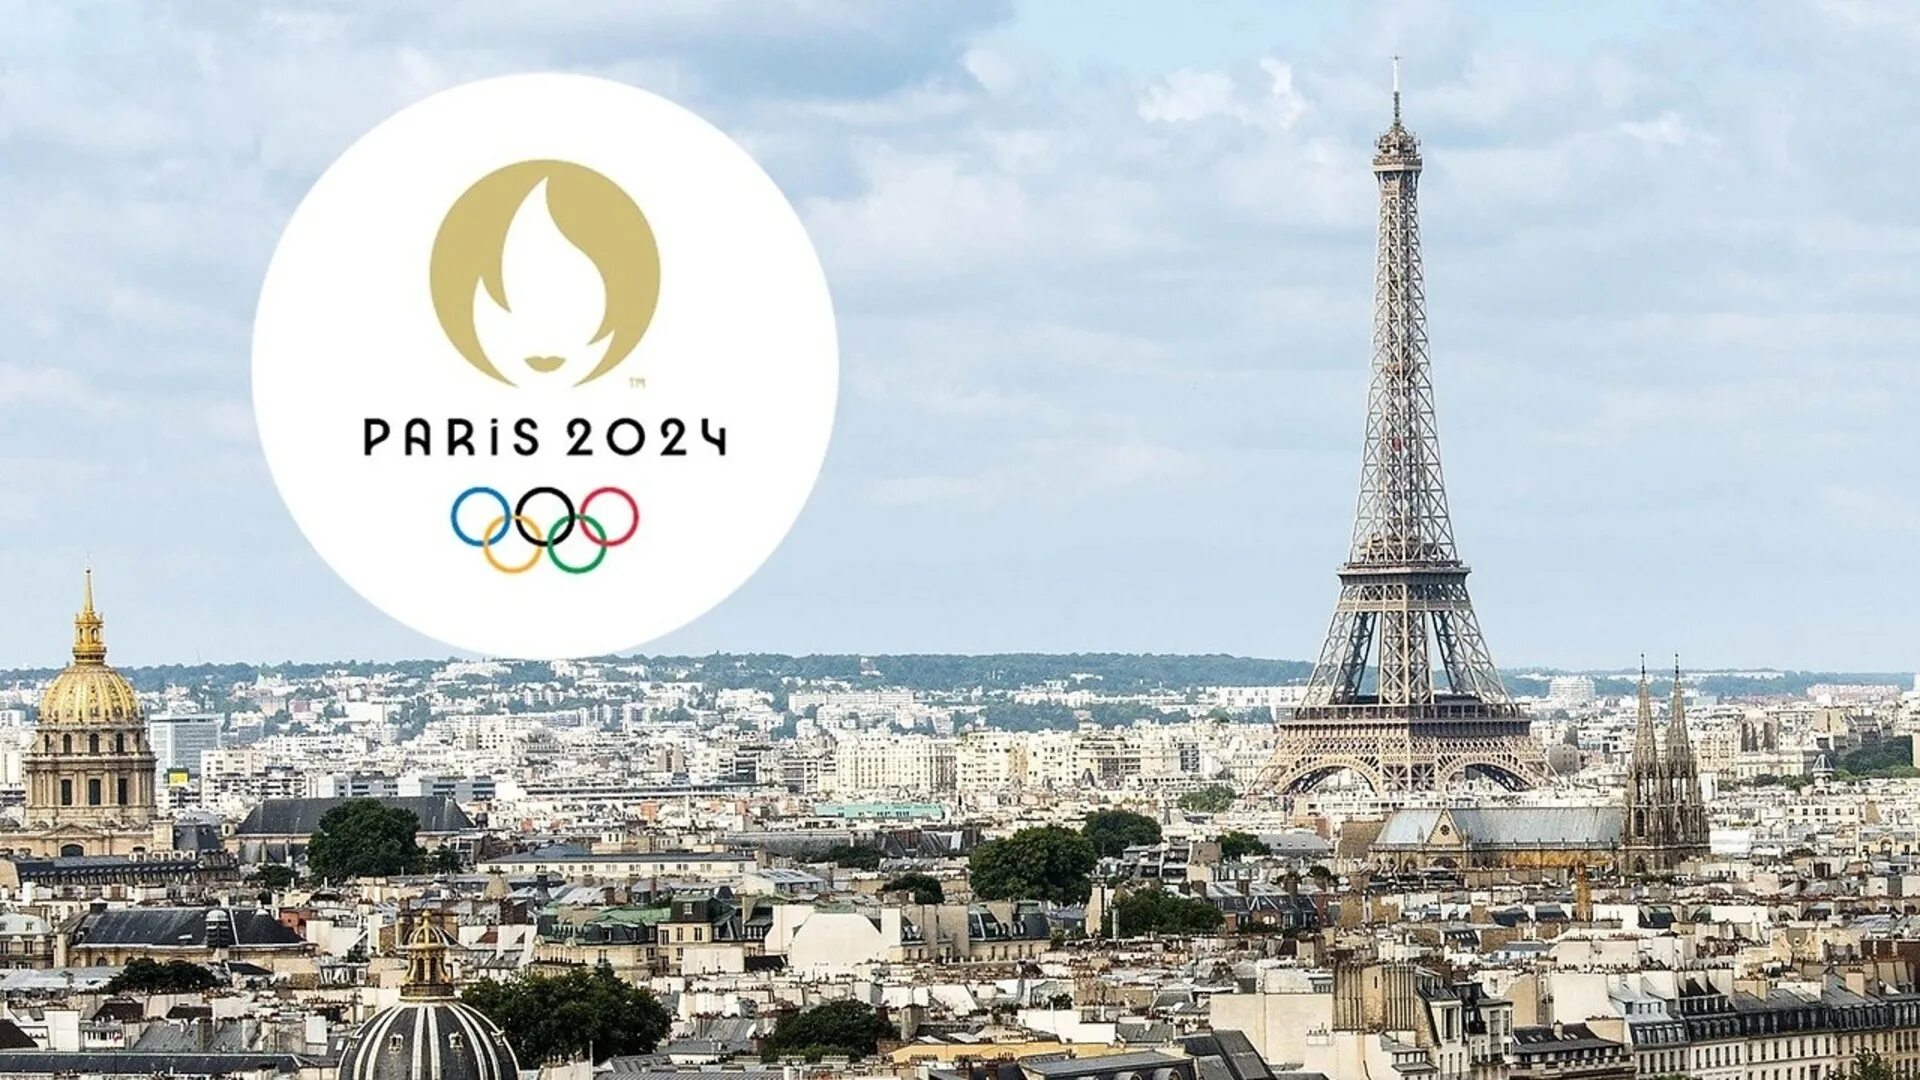 09.02 2024 г. Олимпийские игры 2024 года в Париже. Олимпийских игр–2024 в Париже лого.